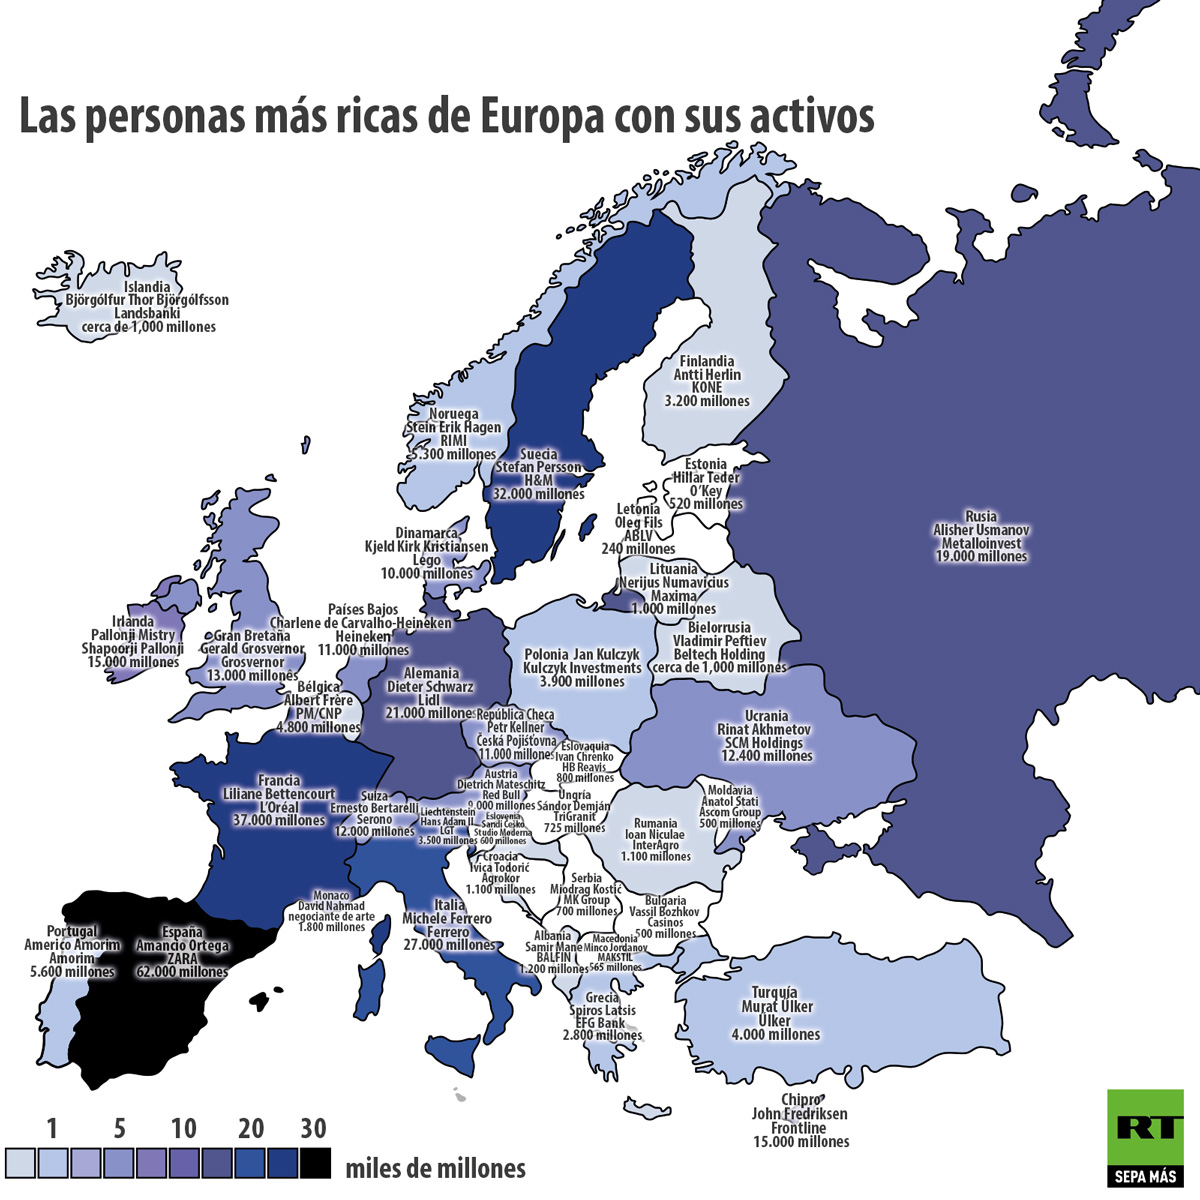 Infografía: ¿Quiénes son los más ricos de Europa? - RT